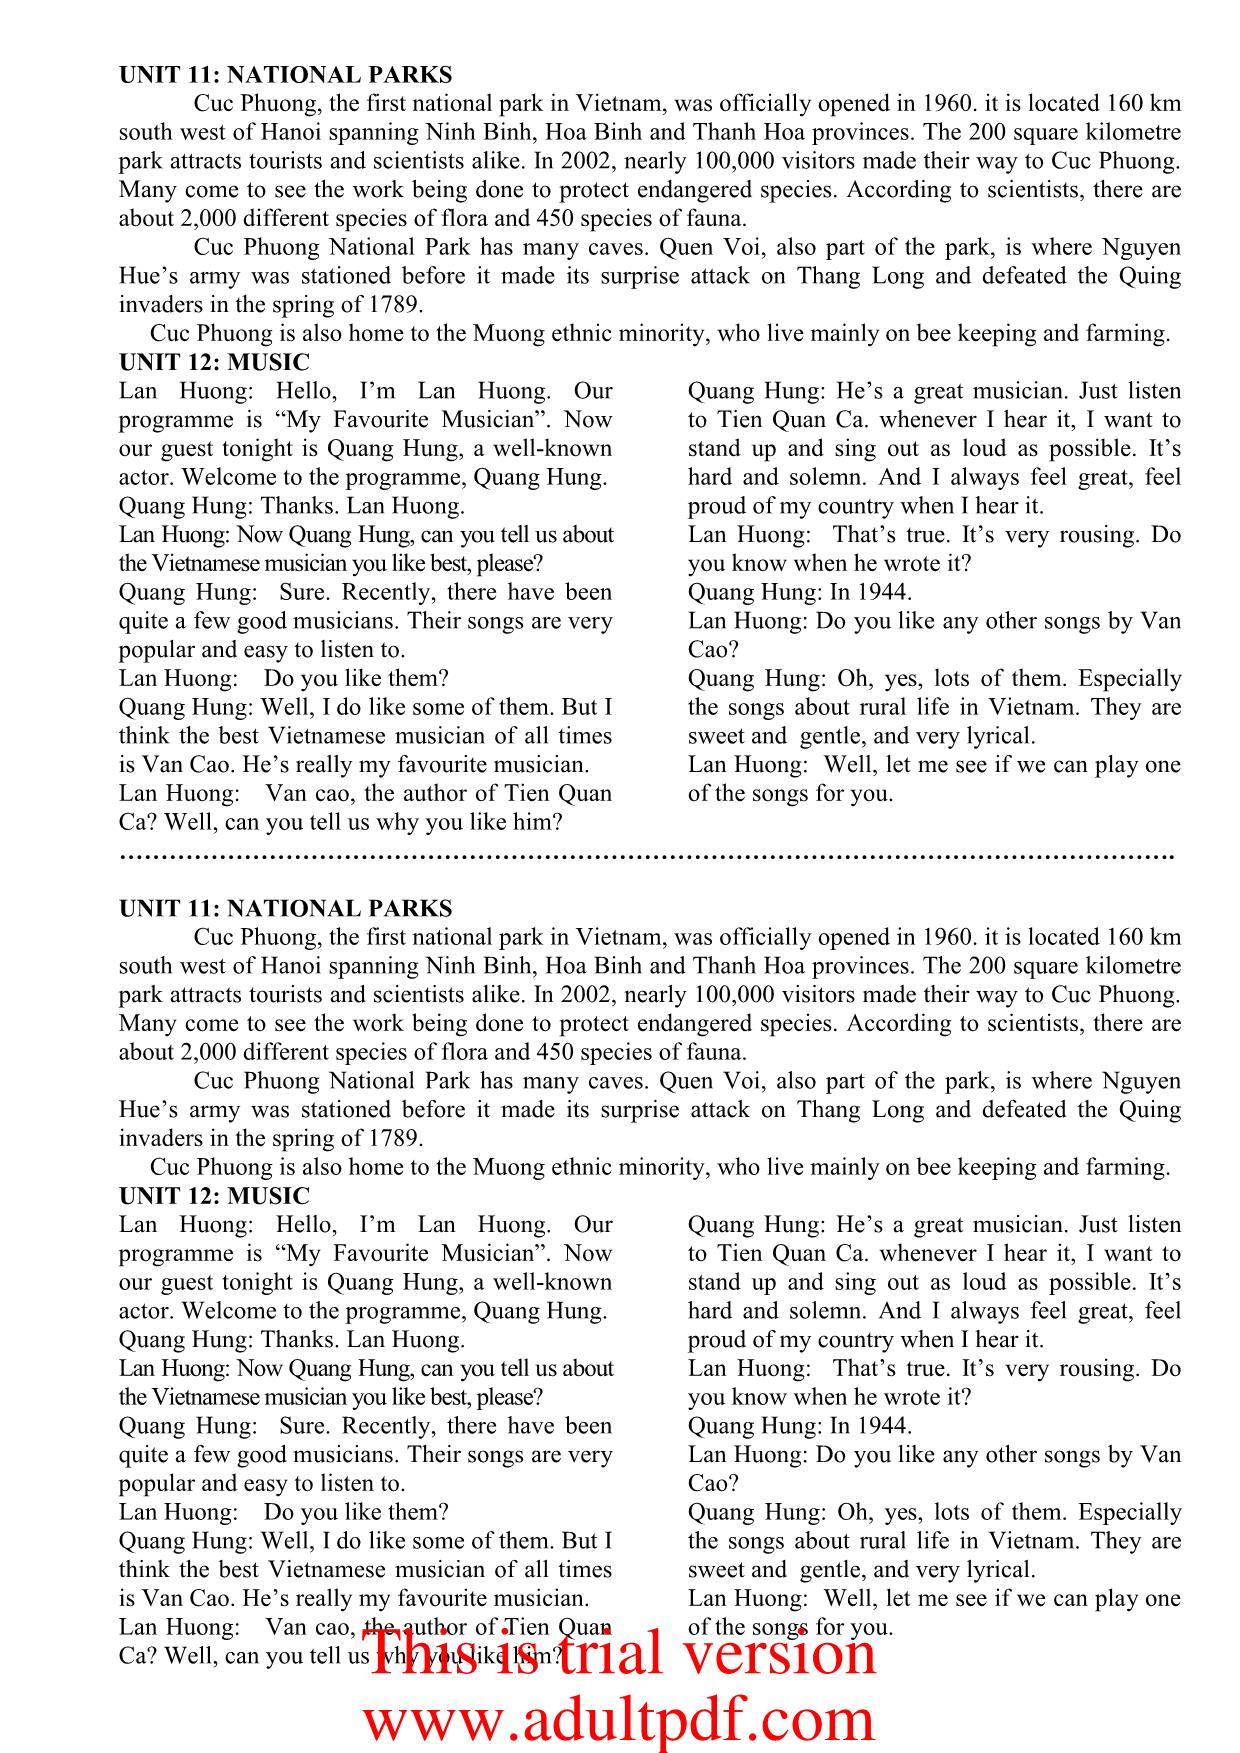 Tiếng Anh - Tapescripts 10 trang 10